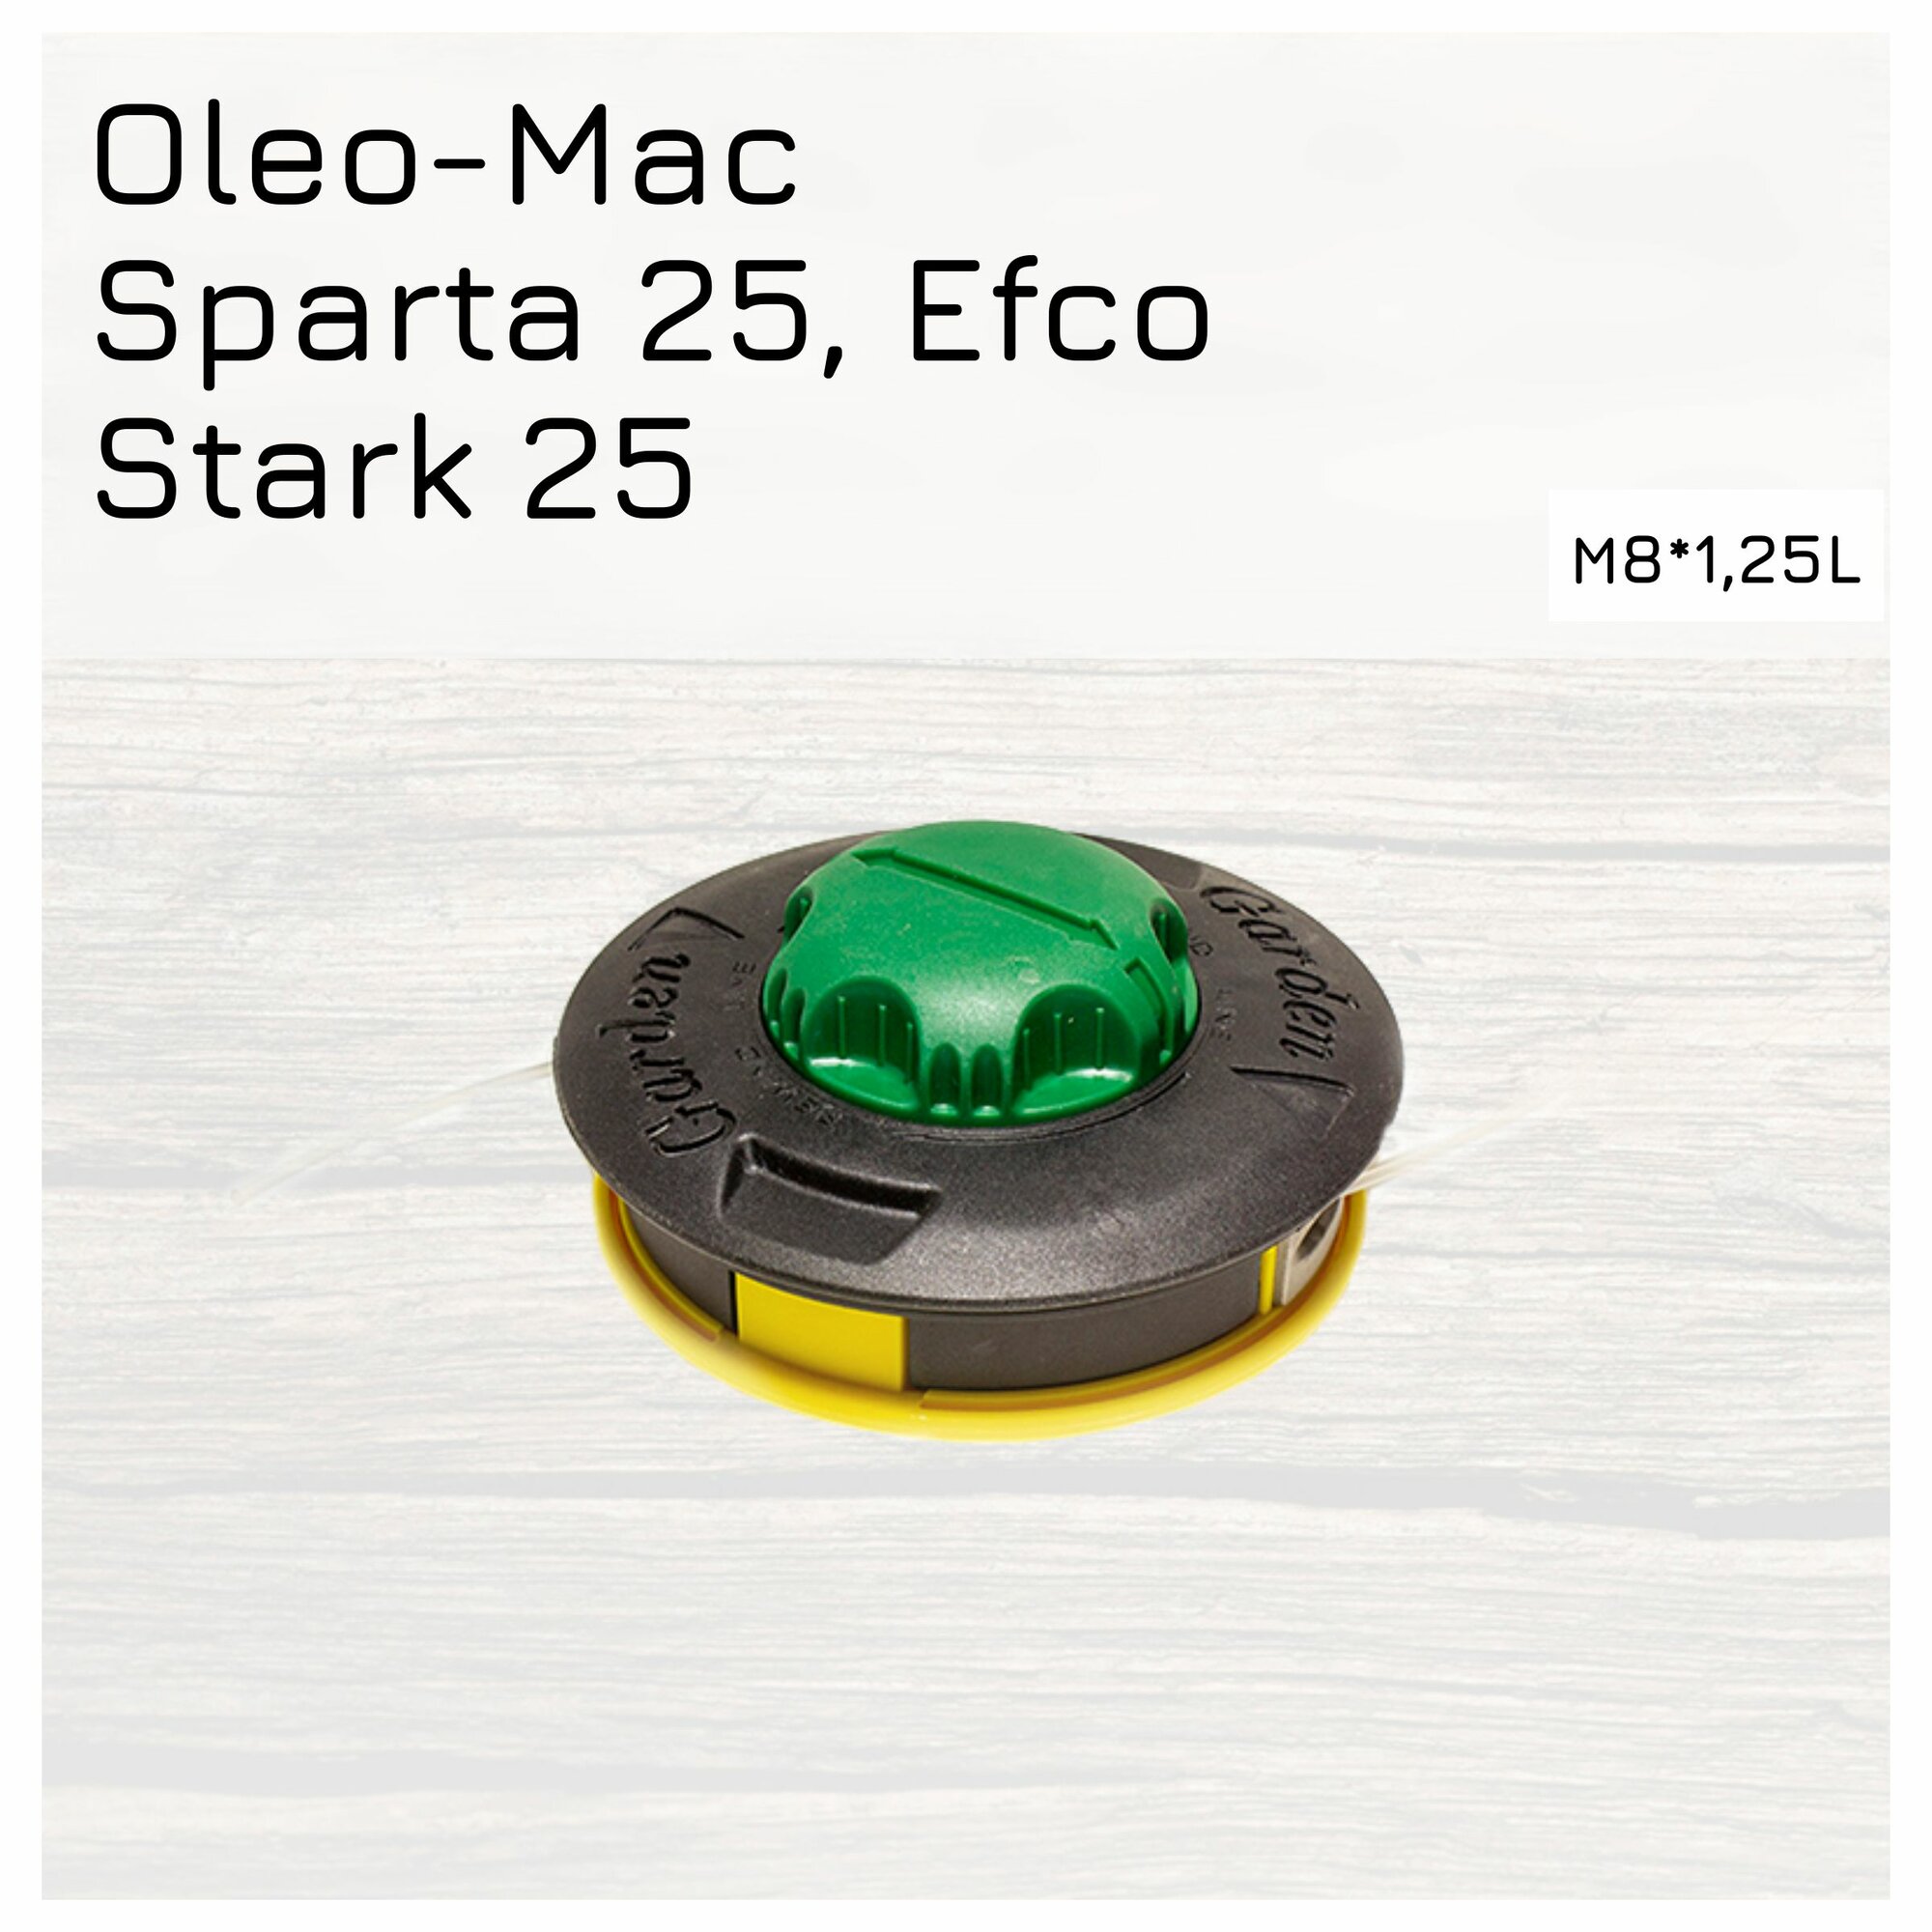 Триммерная головка для мотокос Oleo-Mac Sparta 25/ Efco Stark 25 болт левая резьба М8*125 Улучшенное качество Профессиональная серия